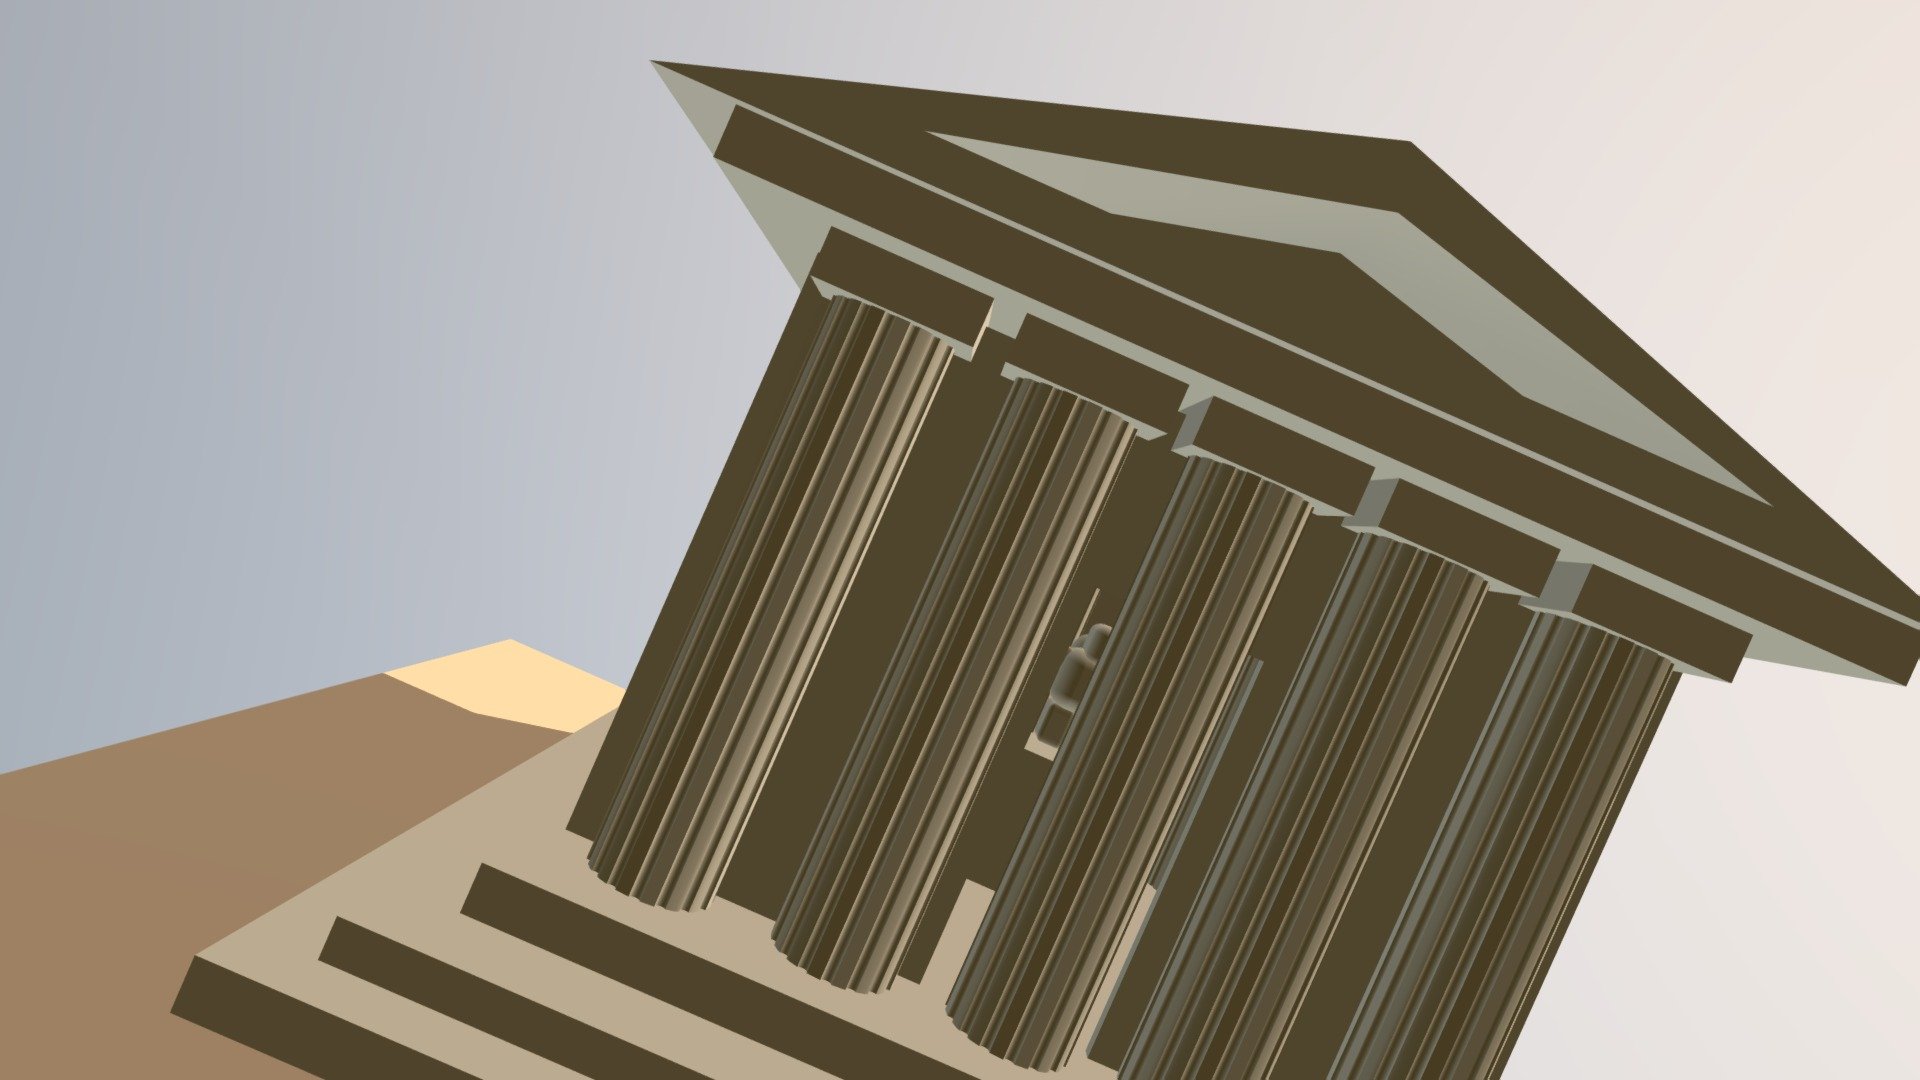 The Parthenon Angelo